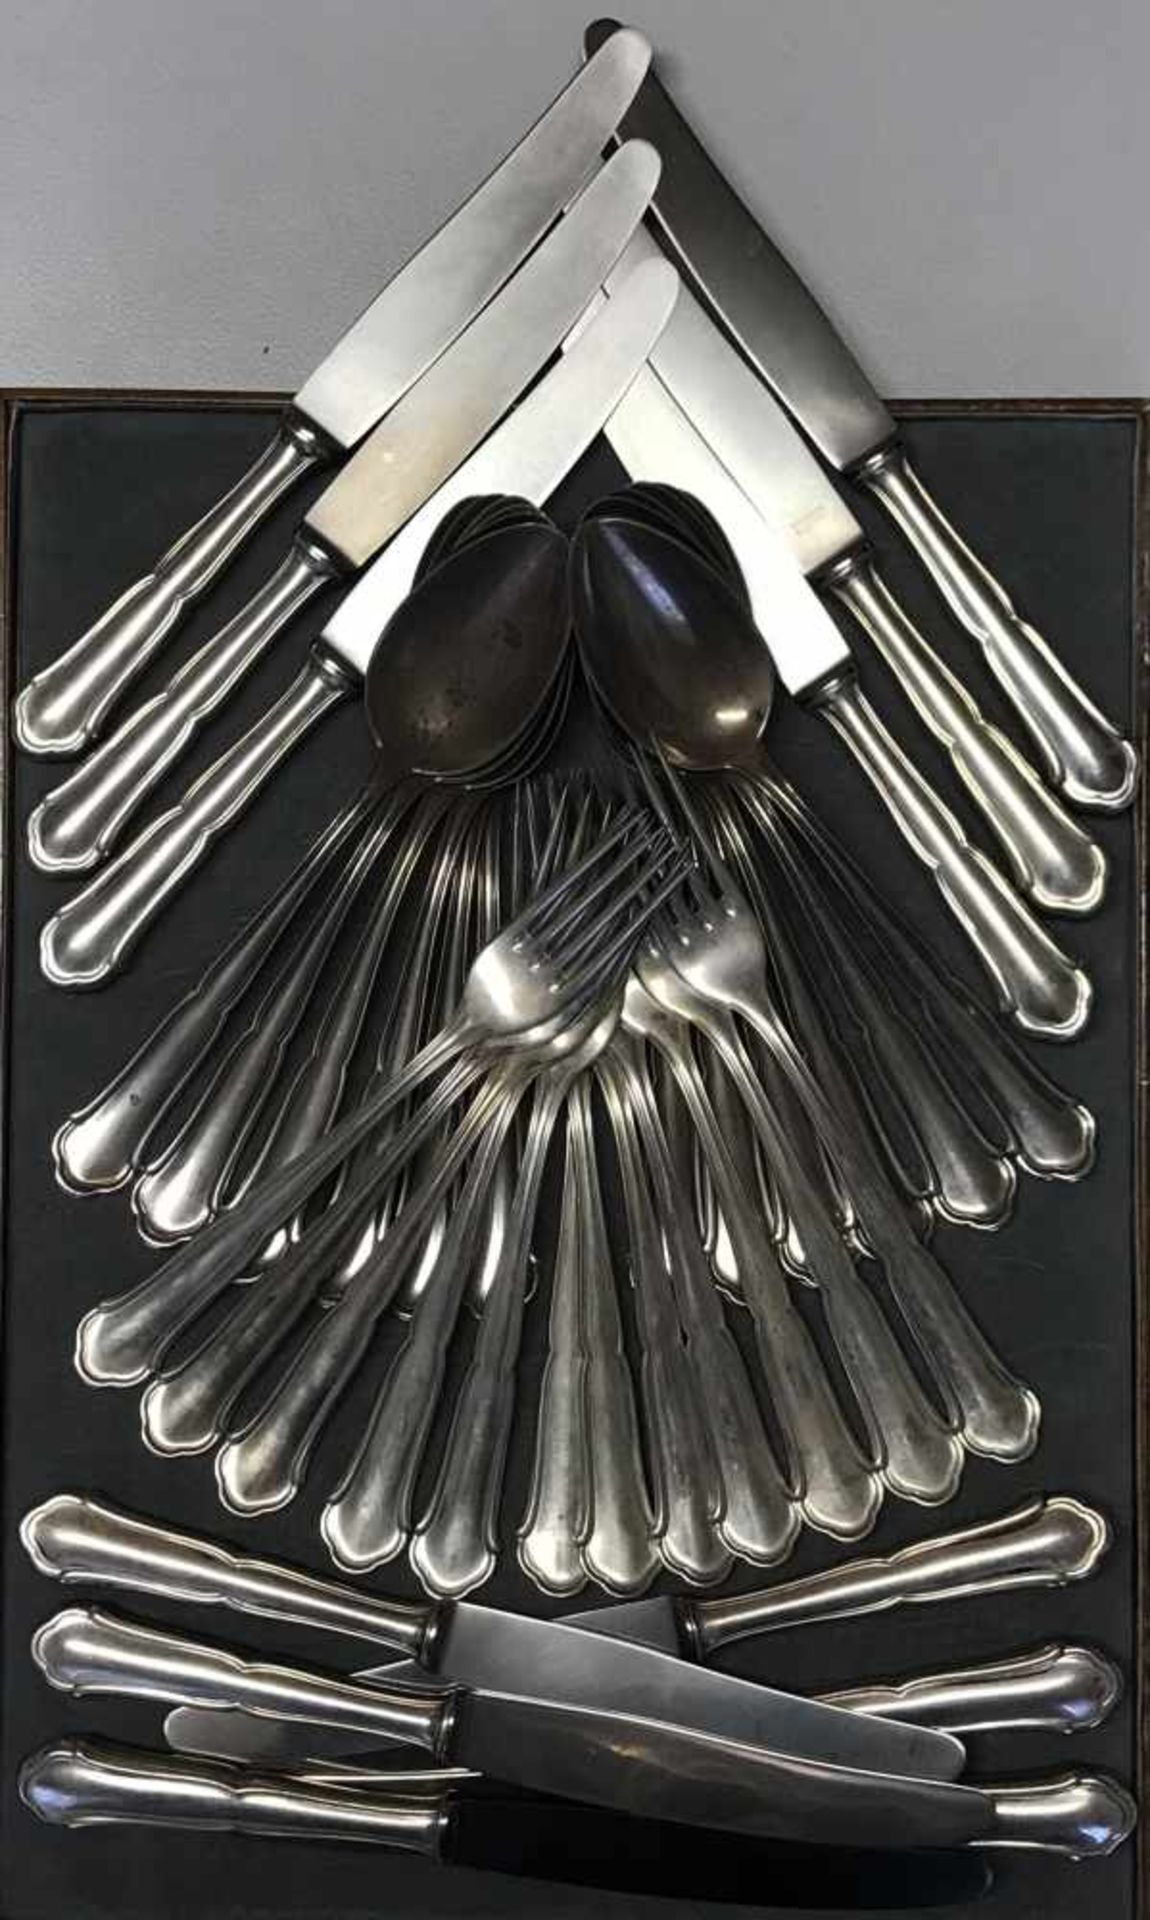 12 x Bestecke, 800er Silber, bestehend aus: 12 Gabeln, 12 Messer und 12 Esslöffel, 1088 g nur